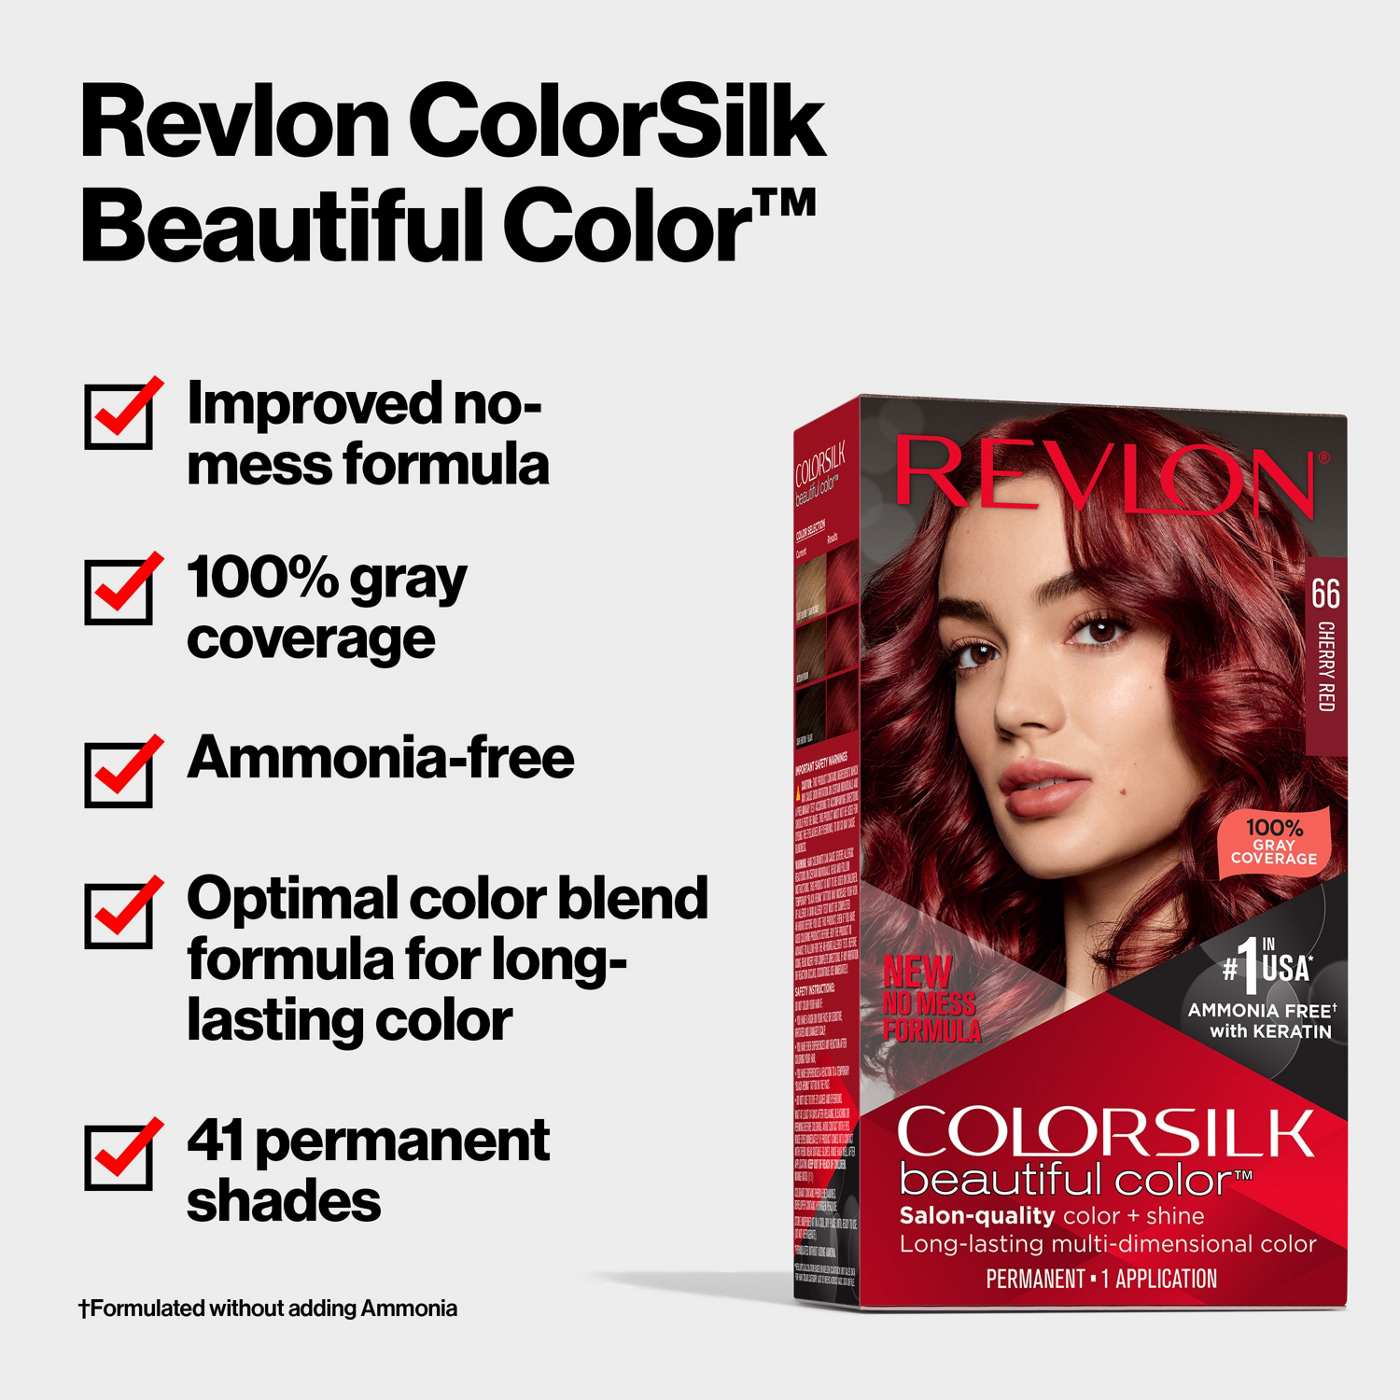 Revlon ColorSilk Hair Color - 31 Dark Auburn; image 6 of 7